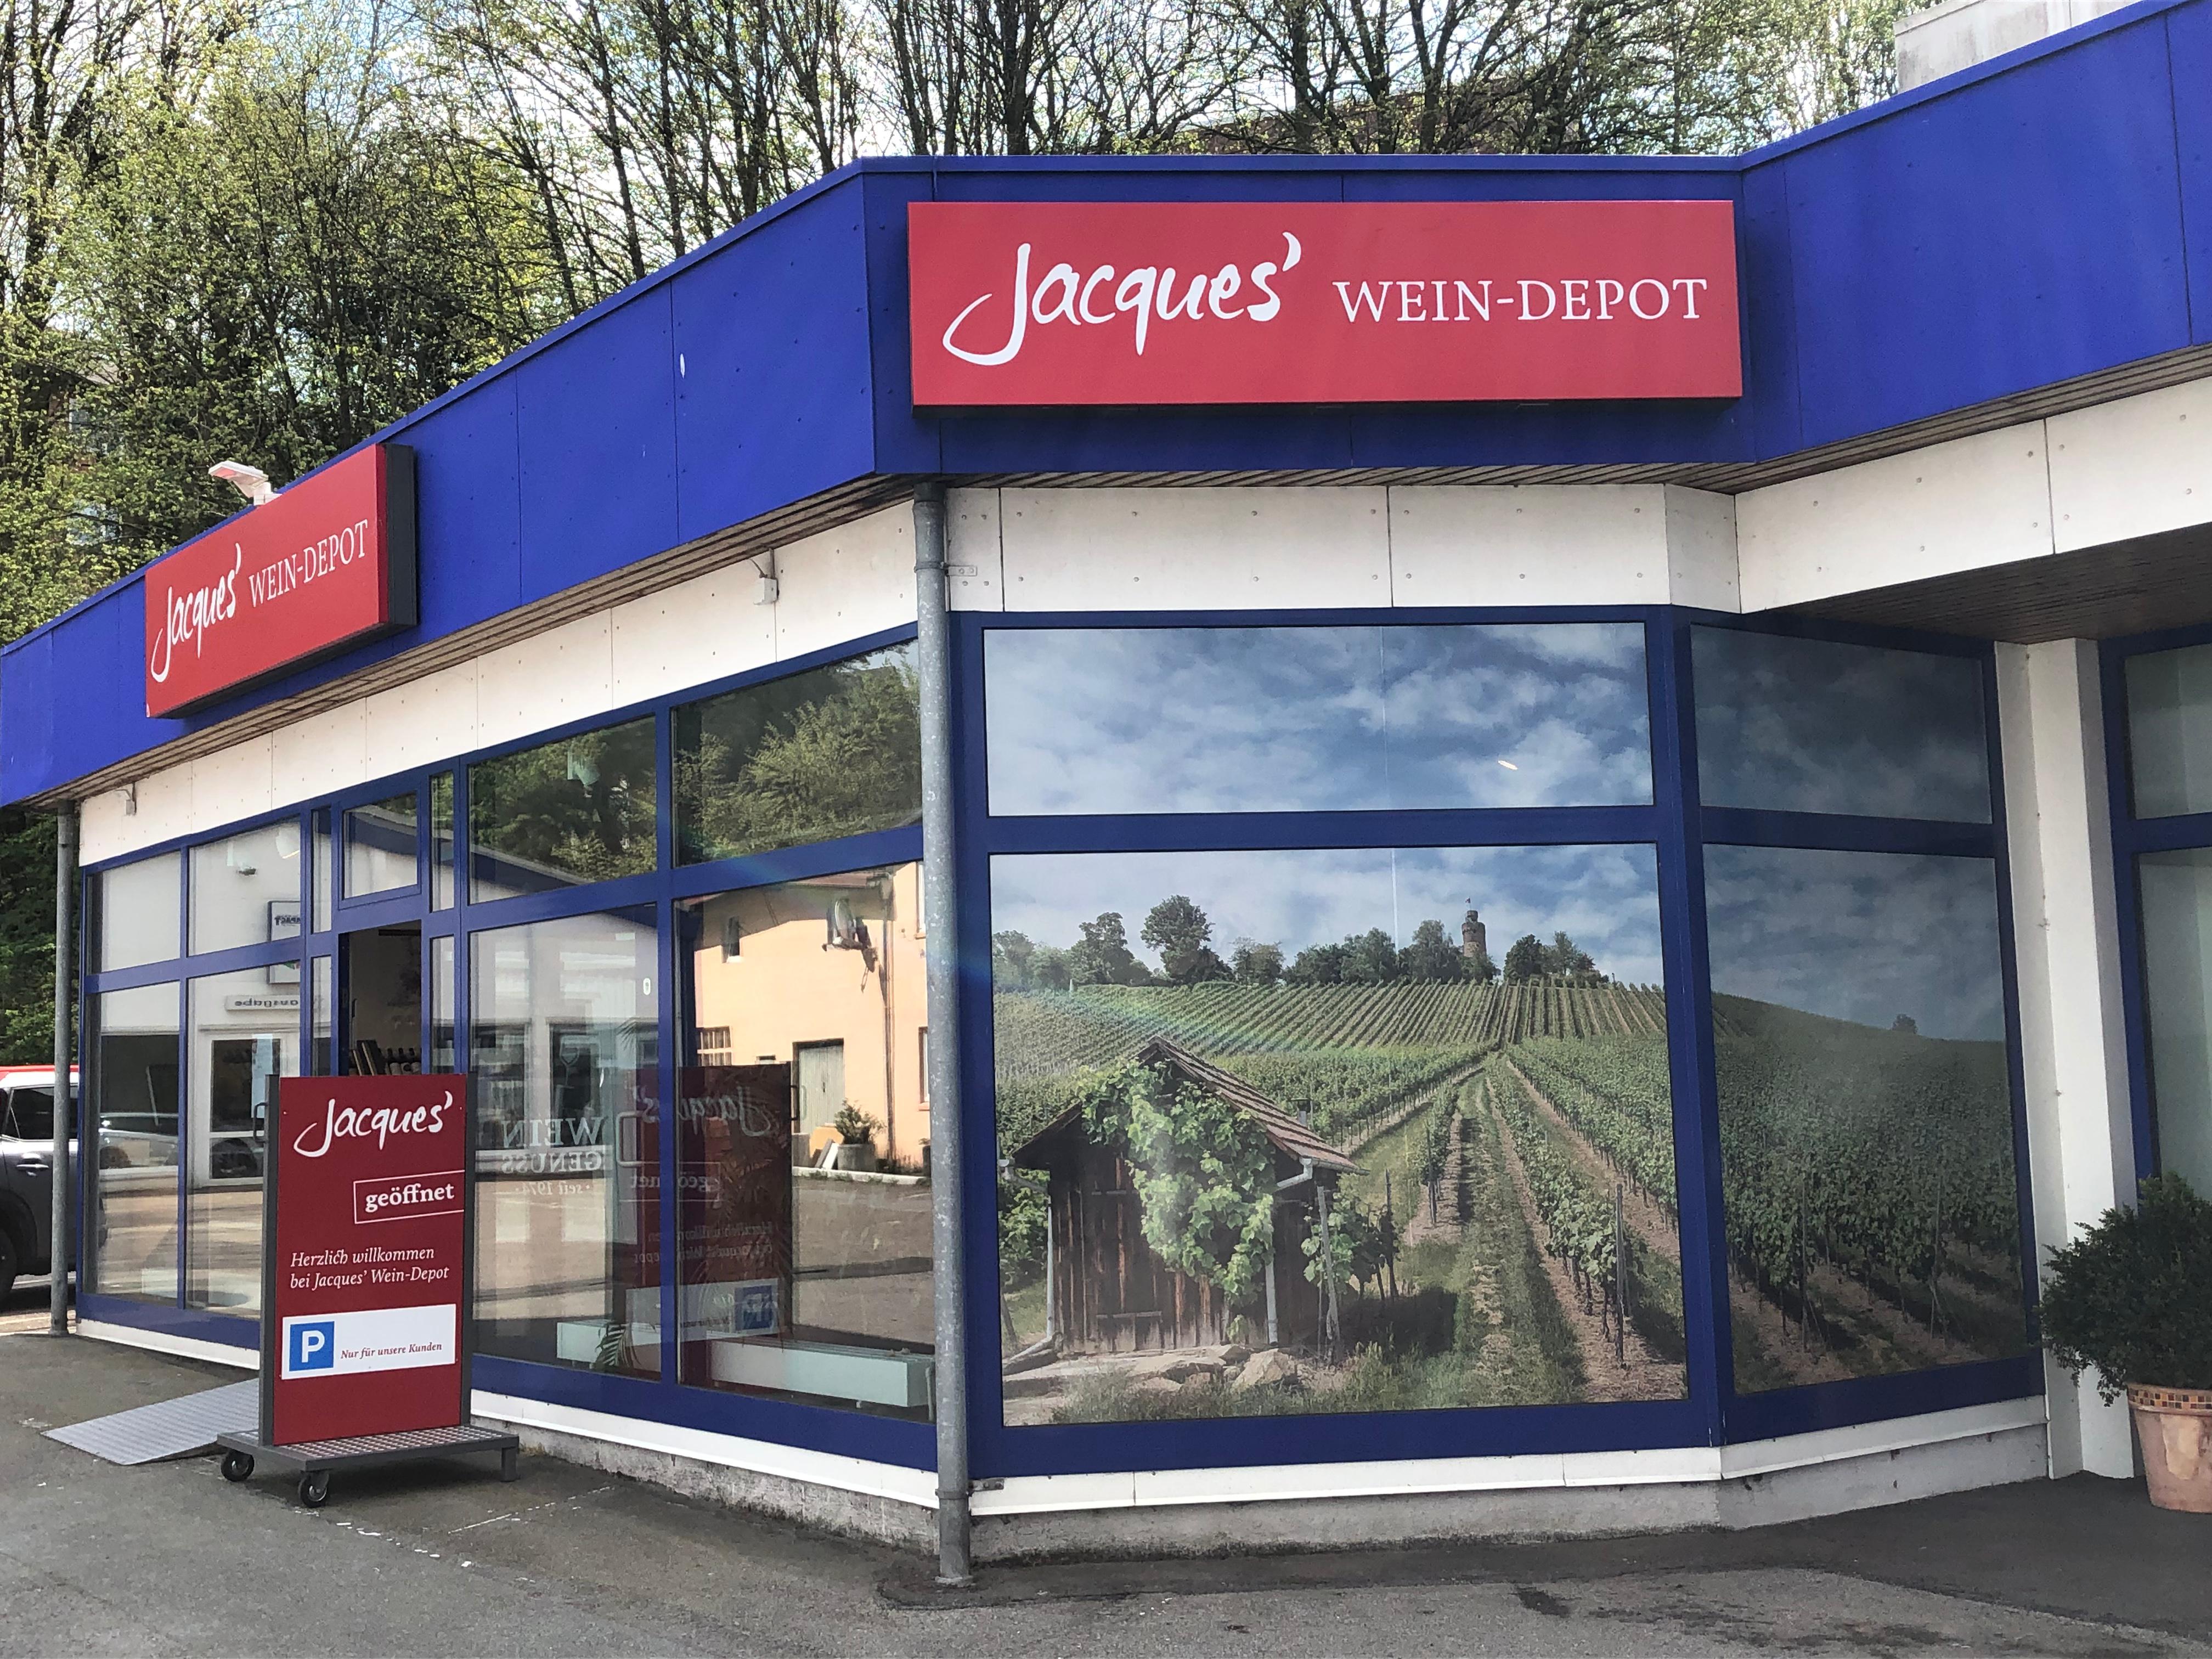 Bild 1 Jacques’ Wein-Depot in Flensburg